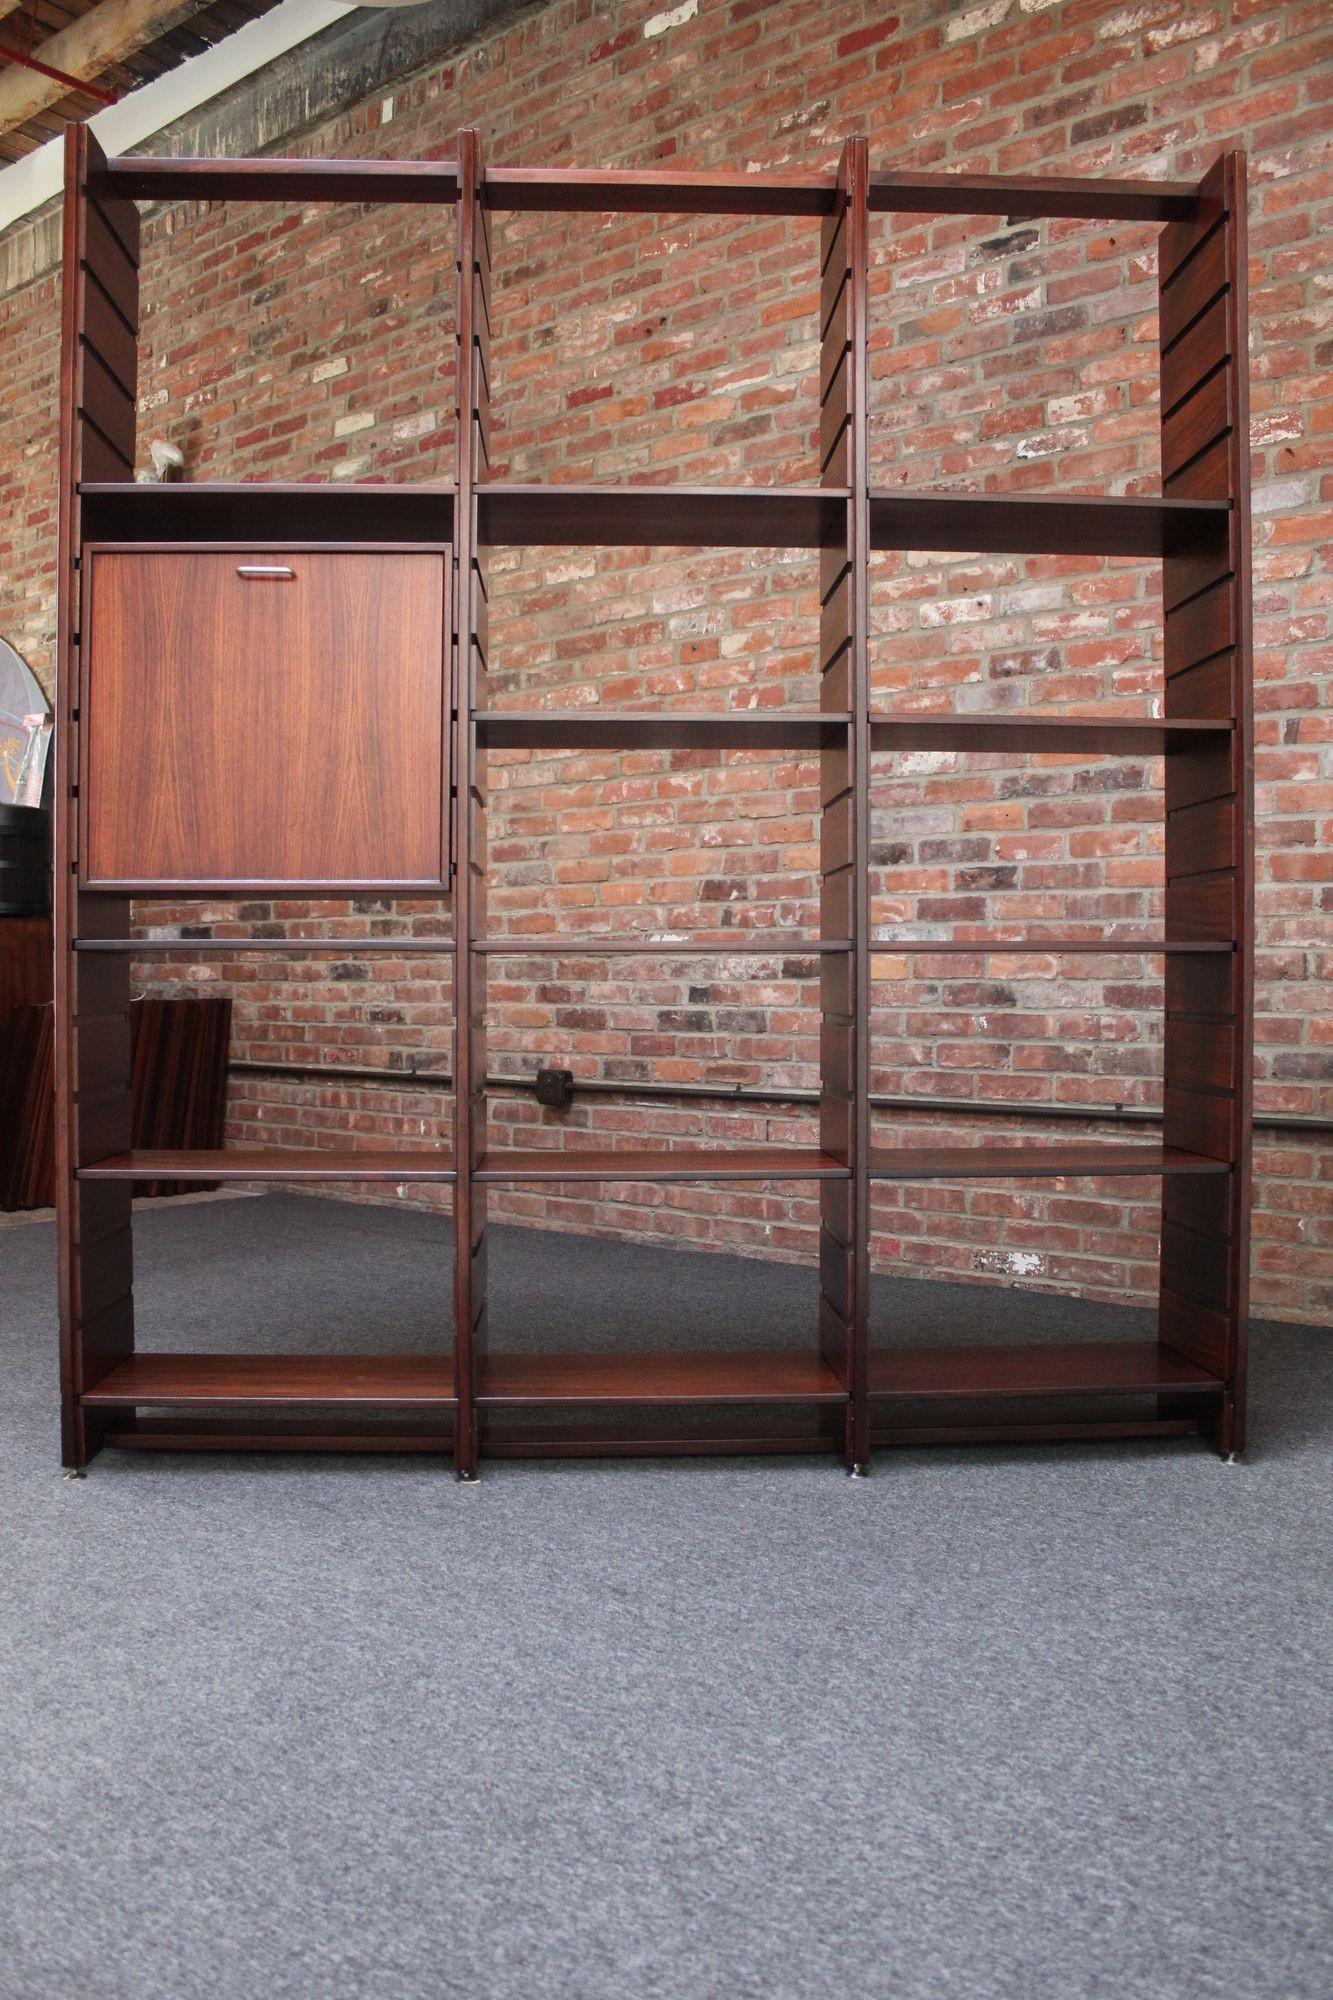 Bibliothèque modulaire modèle 540 conçue par Gianfranco Frattini pour Bernini (vers les années 1960, Italie).
Rare exemplaire en bois de rose composé de quatre rails verticaux à lattes créant trois travées comprenant 14 étagères et un meuble de